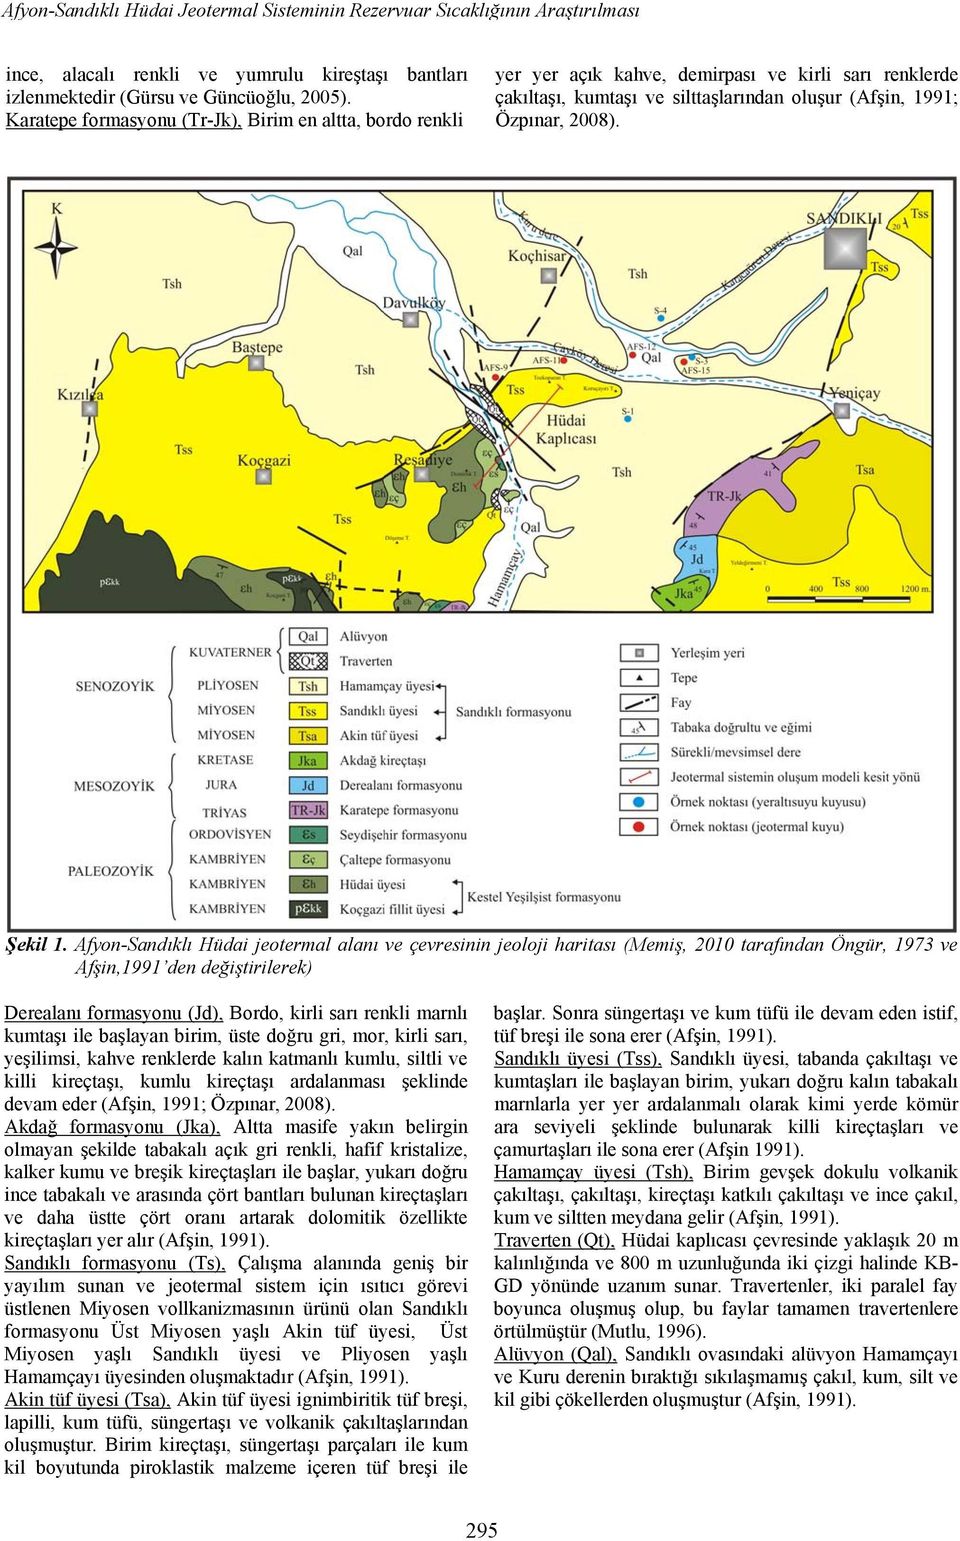 Afyon-Sandıklı Hüdai jeotermal alanı ve çevresinin jeoloji haritası (Memiş, 2010 tarafından Öngür, 1973 ve Afşin,1991 den değiştirilerek) Derealanı formasyonu (Jd), Bordo, kirli sarı renkli marnlı